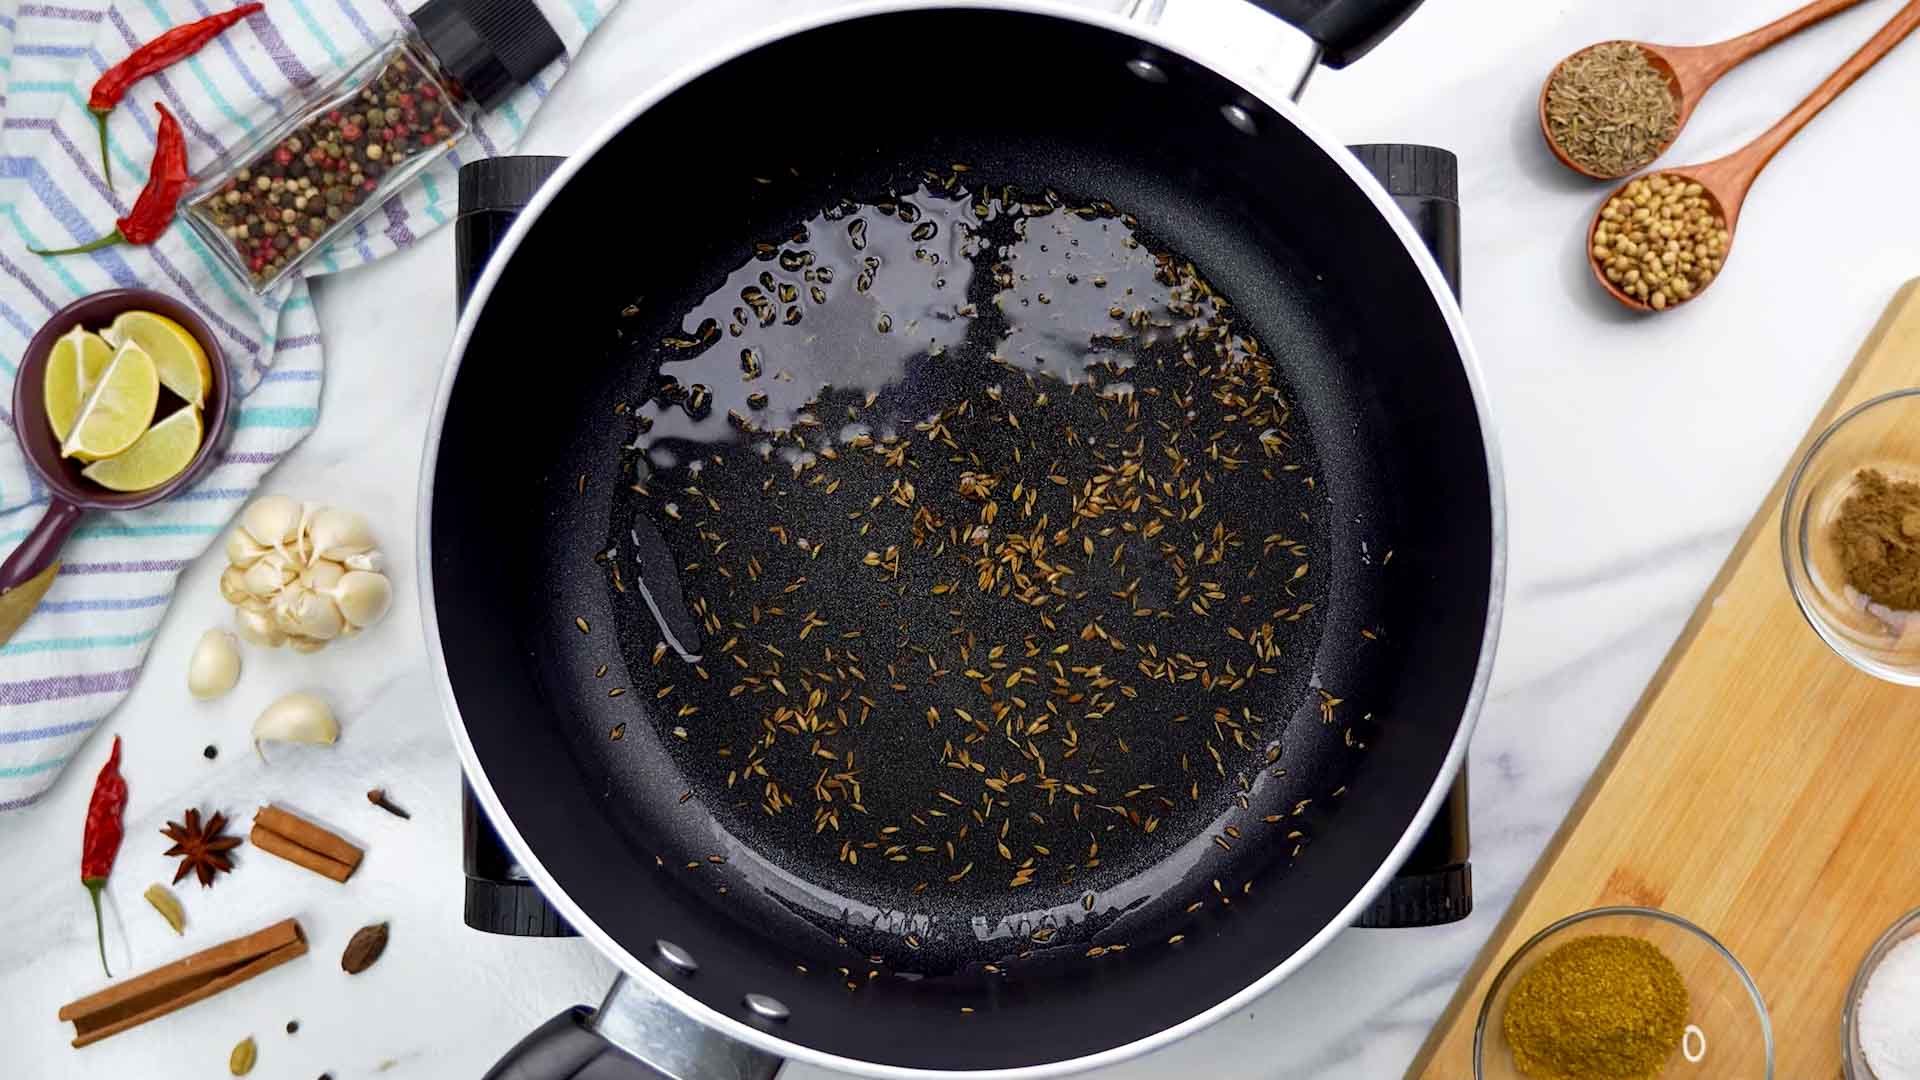 Add cumin seeds in hot oil